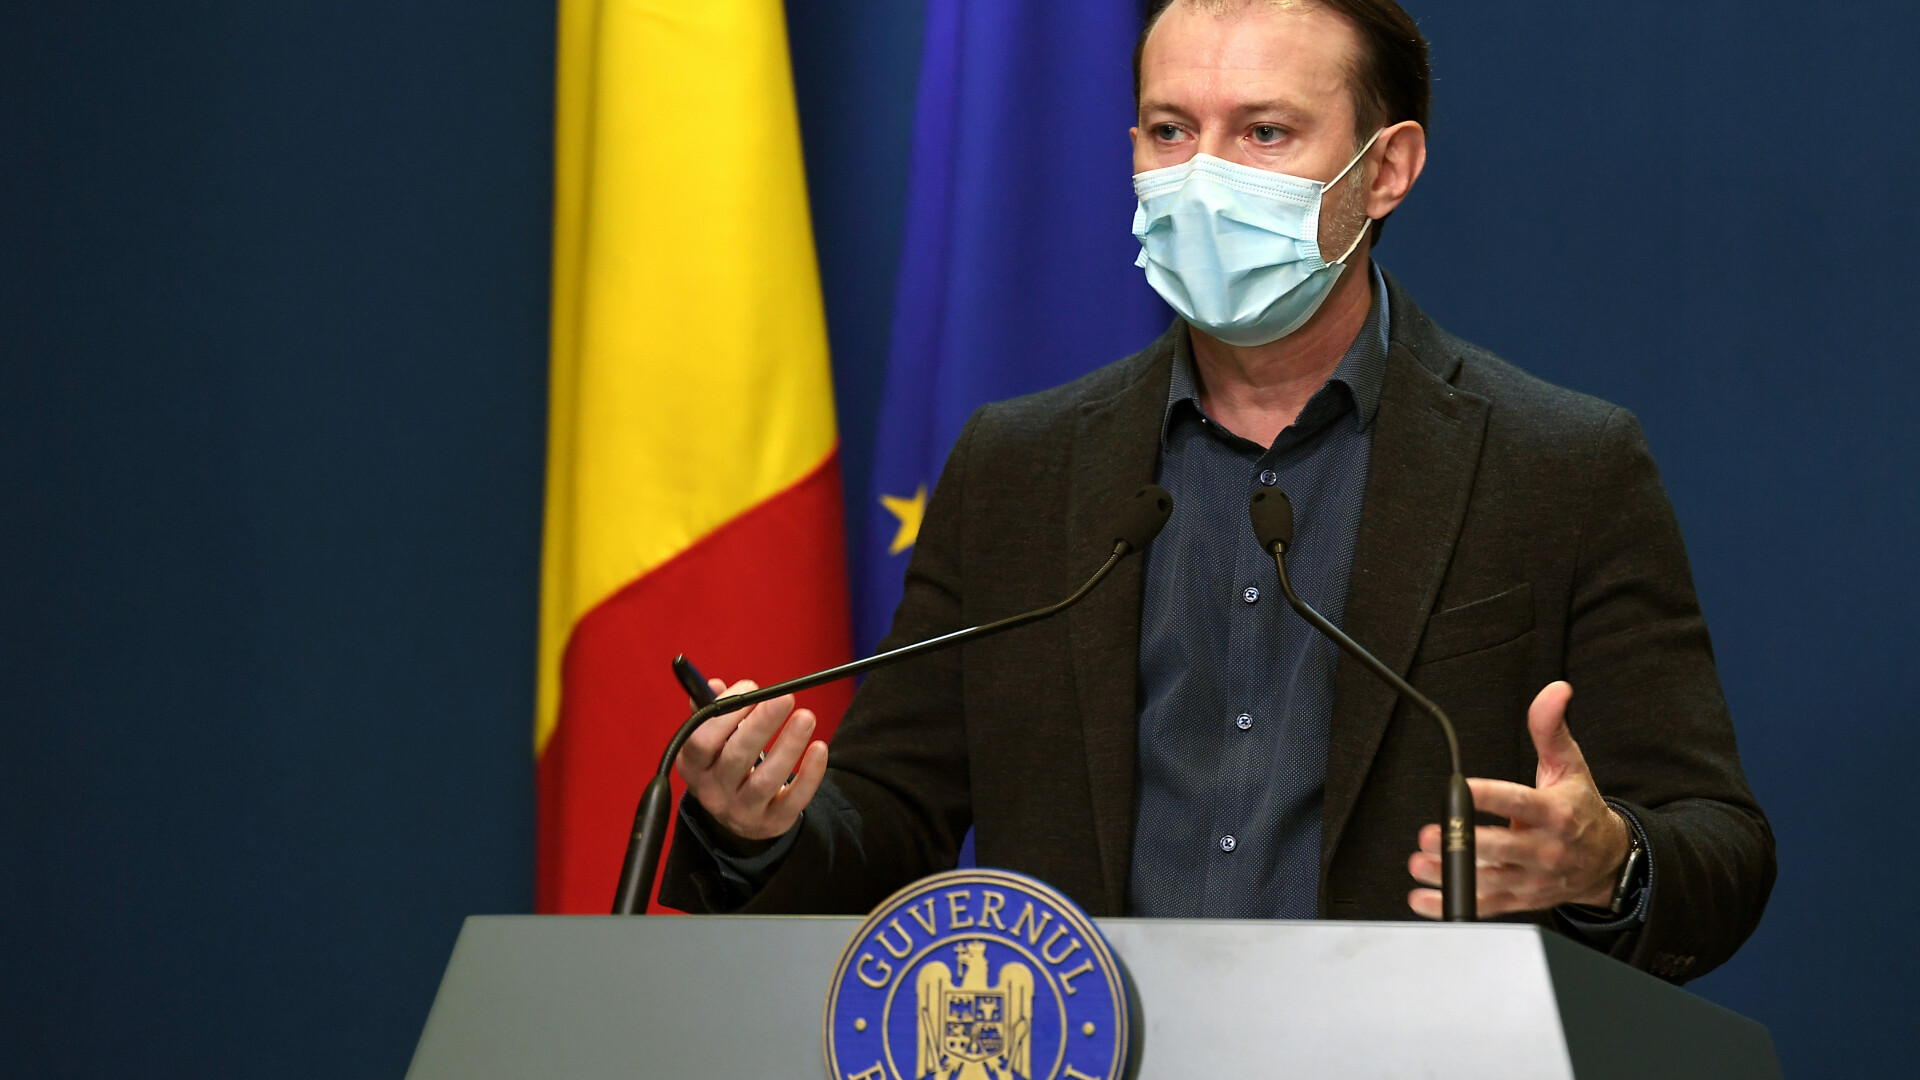 Florin Cîţu: ”Cea mai bună opţiune pentru România este această coaliţie de guvernare”. Ce spune despre atacurile miniștrilor